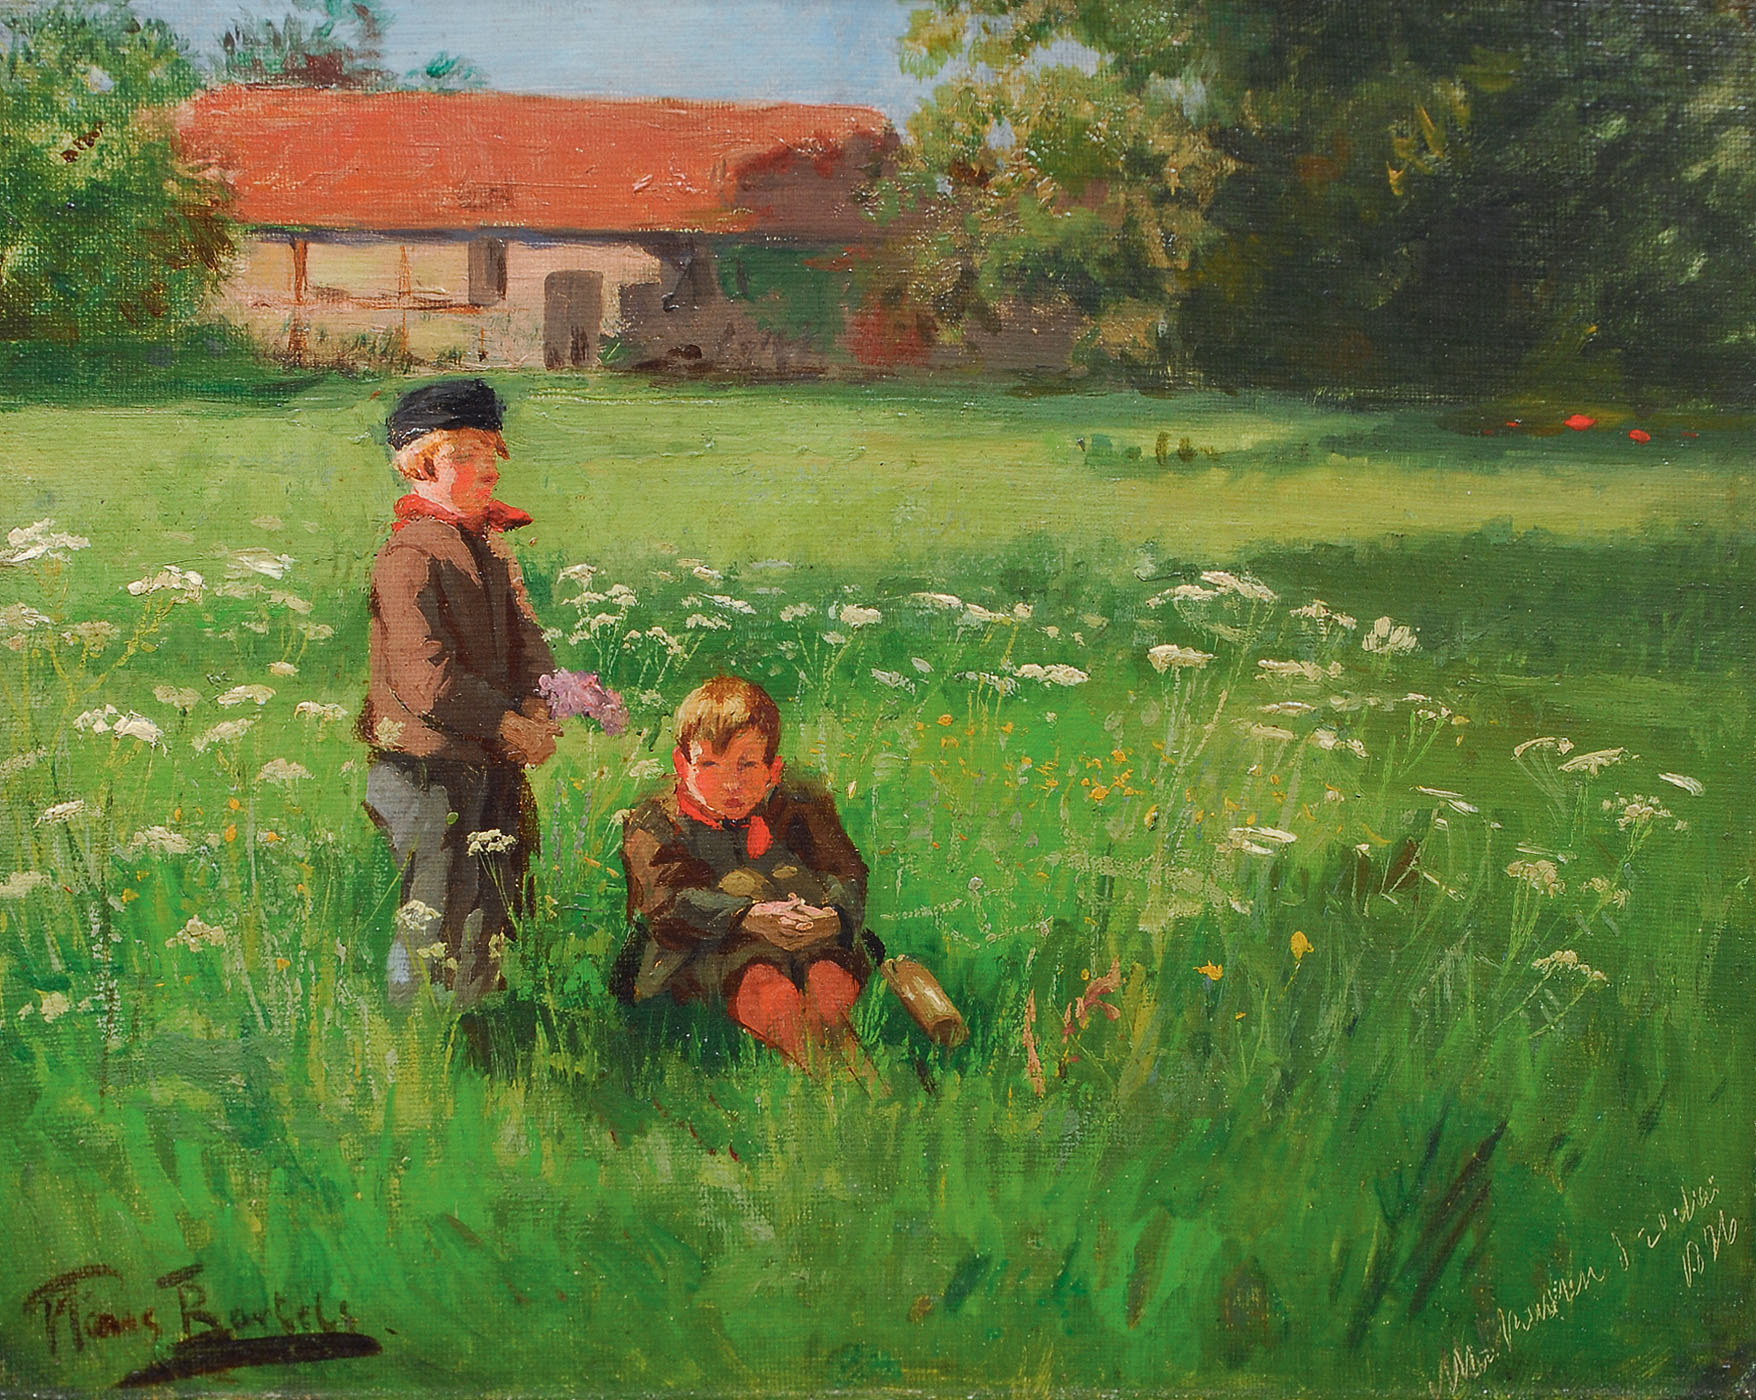 Children on a hayfield